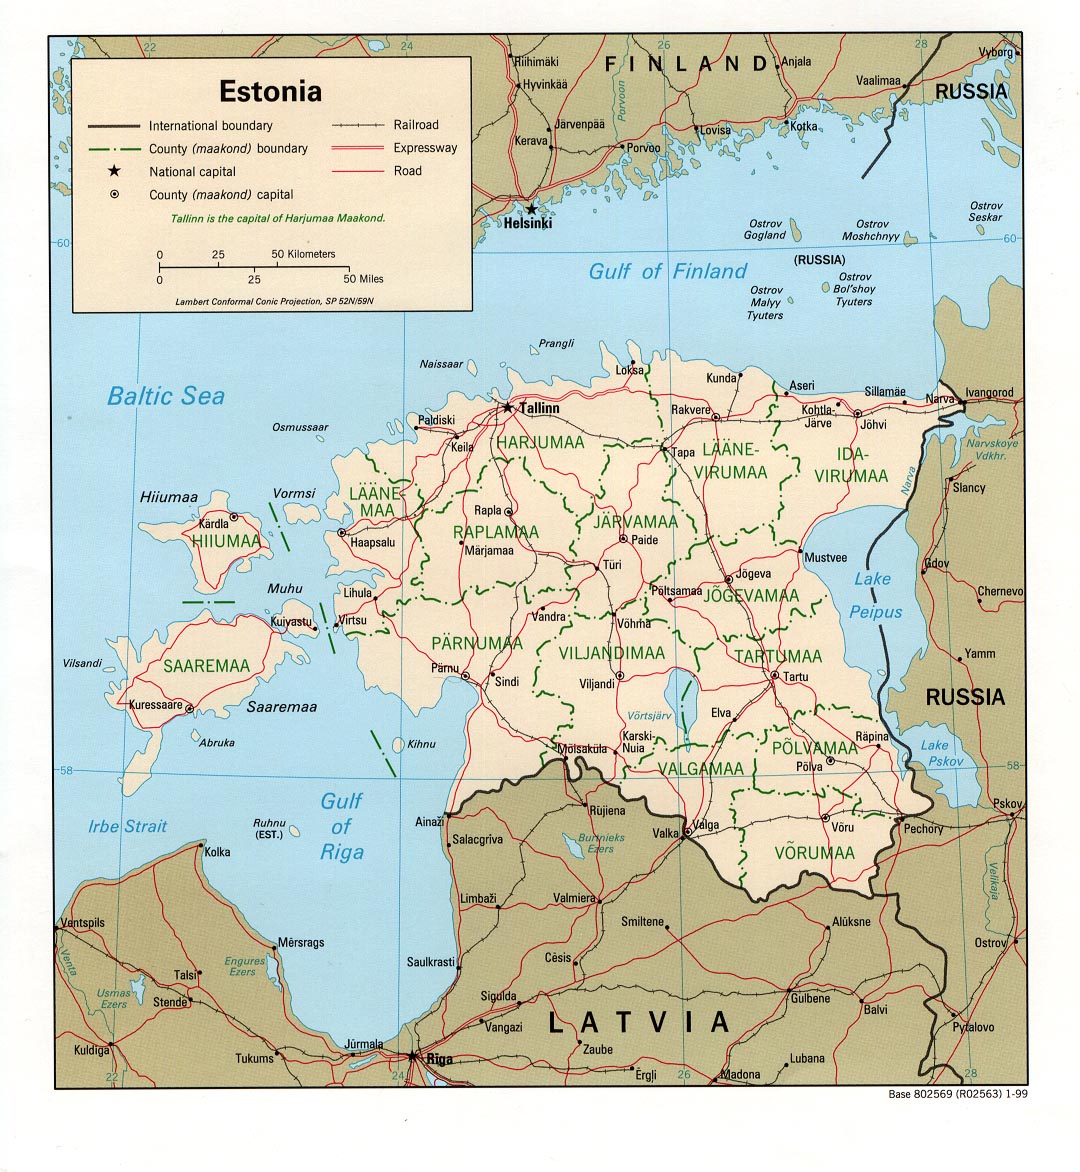 Estland - allgemeine Informationen, Übersicht